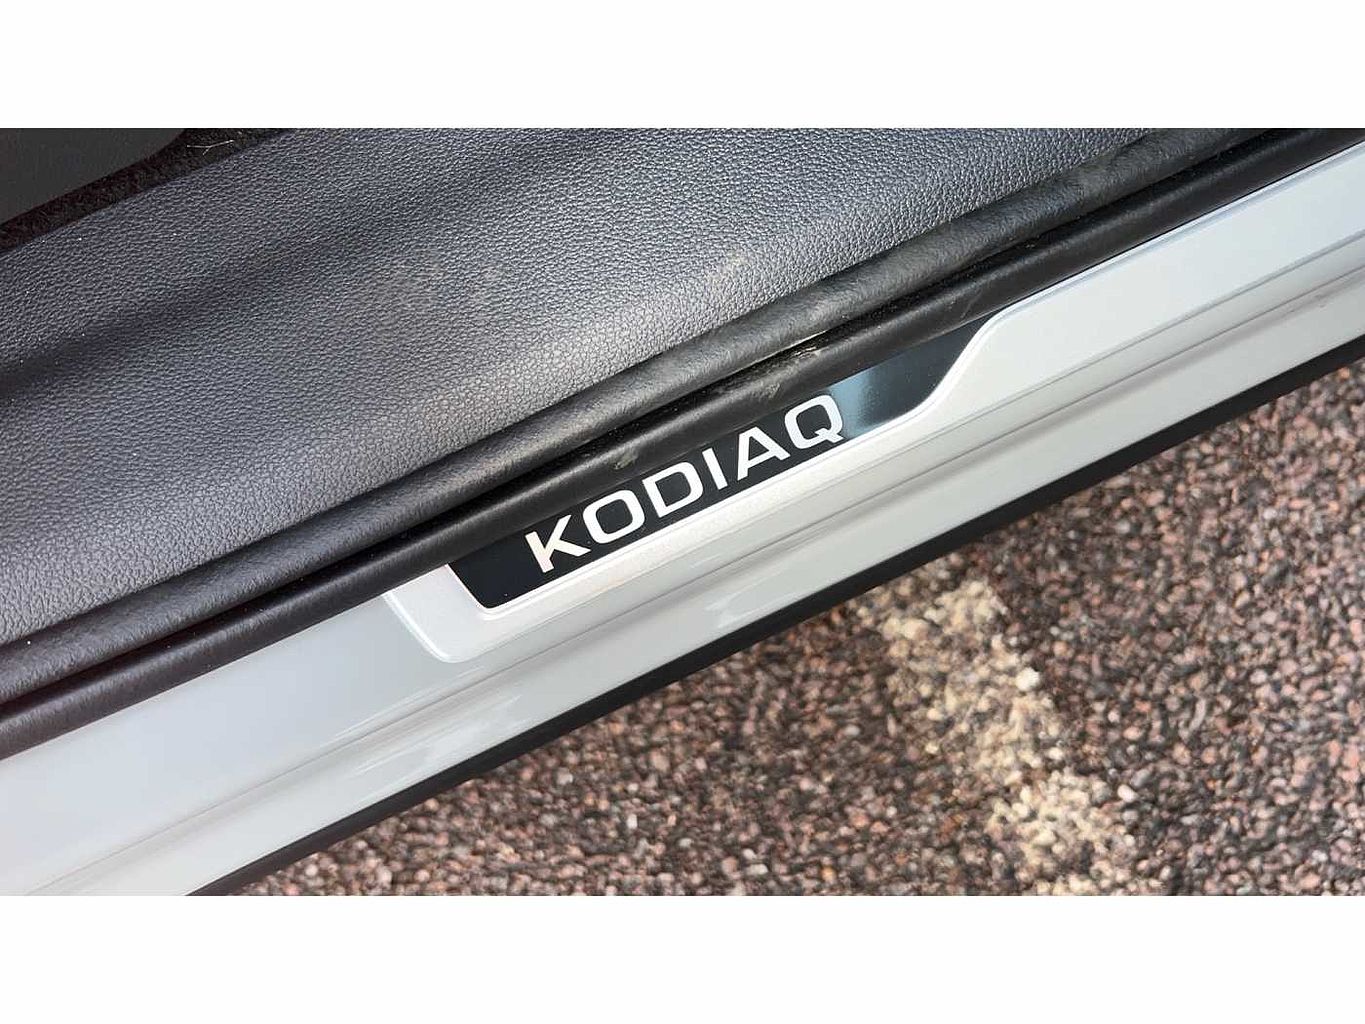 SKODA Kodiaq 2.0TDI 200ps 4X4 Sportline 7 seats SCR DSG